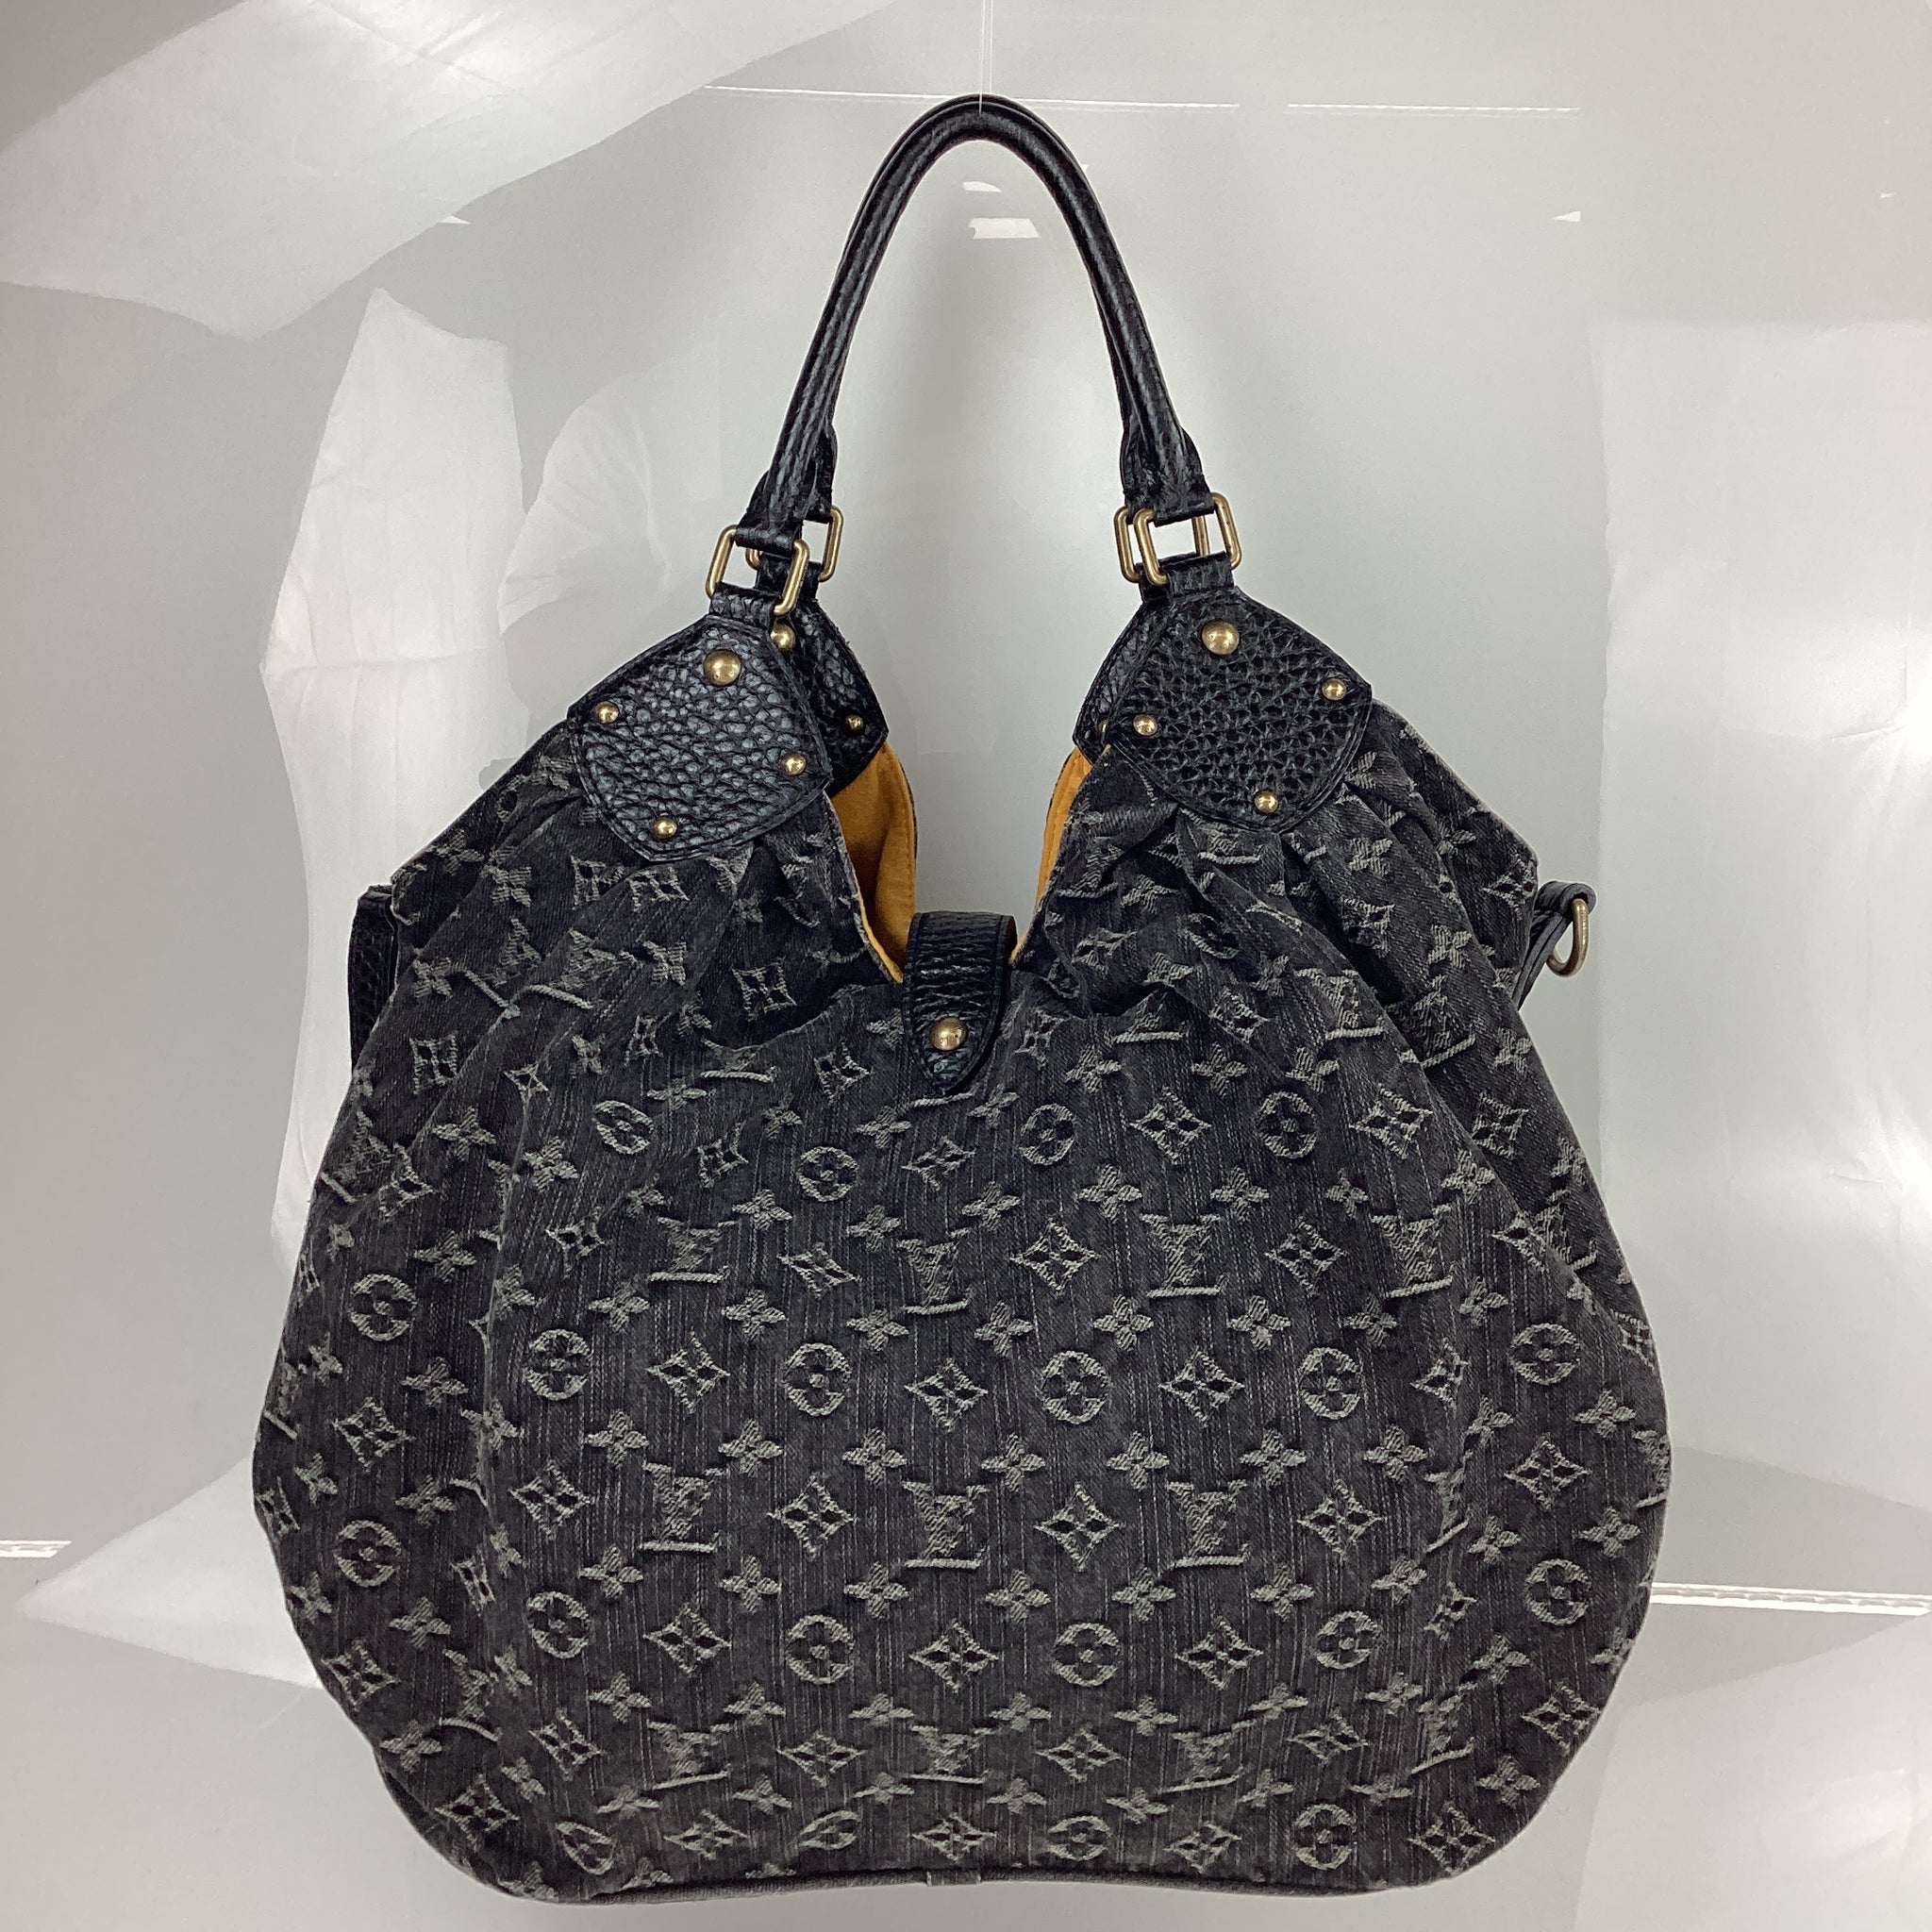 PRELOVED Louis Vuitton Black Denim XL Shoulder Bag VW2X9J3 050324 B